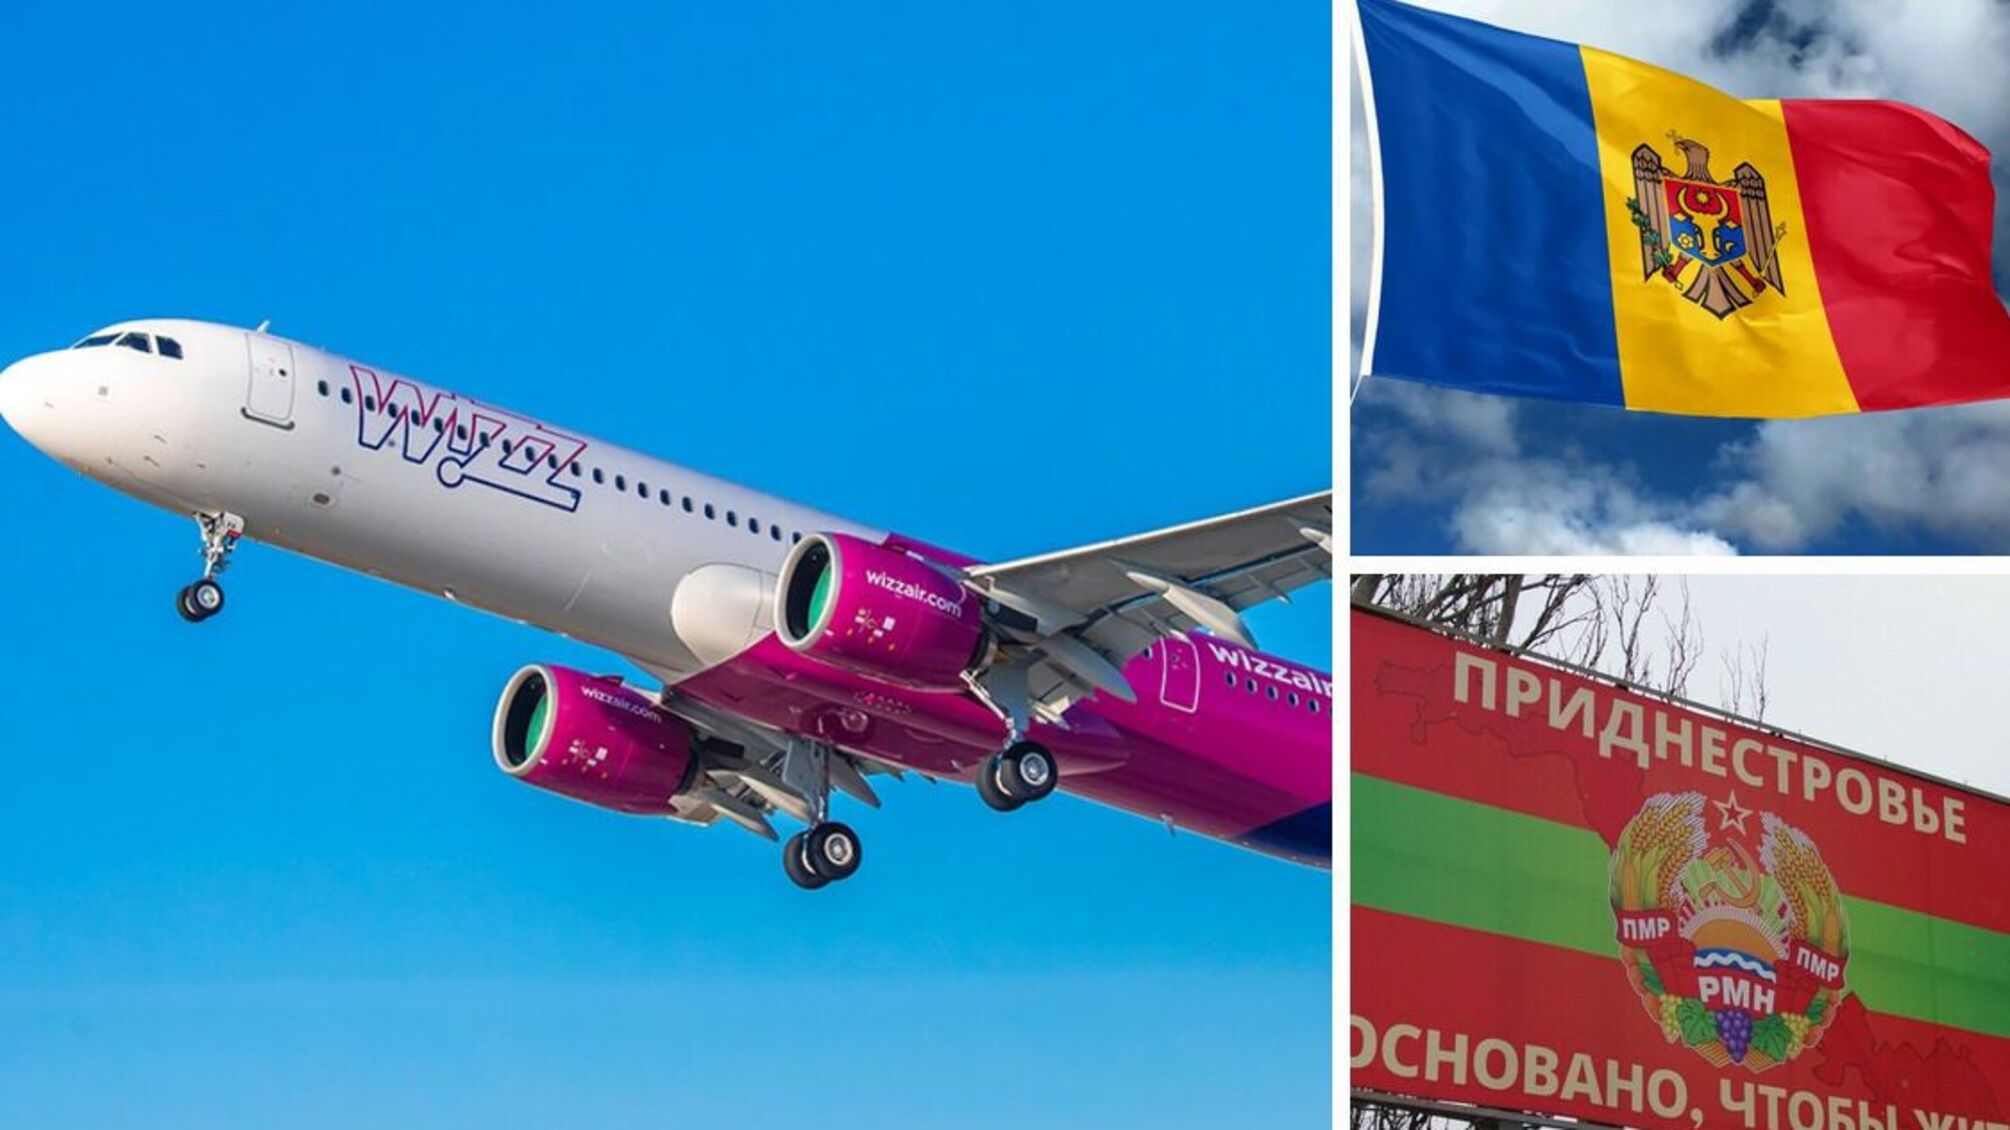 Придністров'я: одна з авіакомпаній припиняє авіасполучення з Молдовою - що відомо